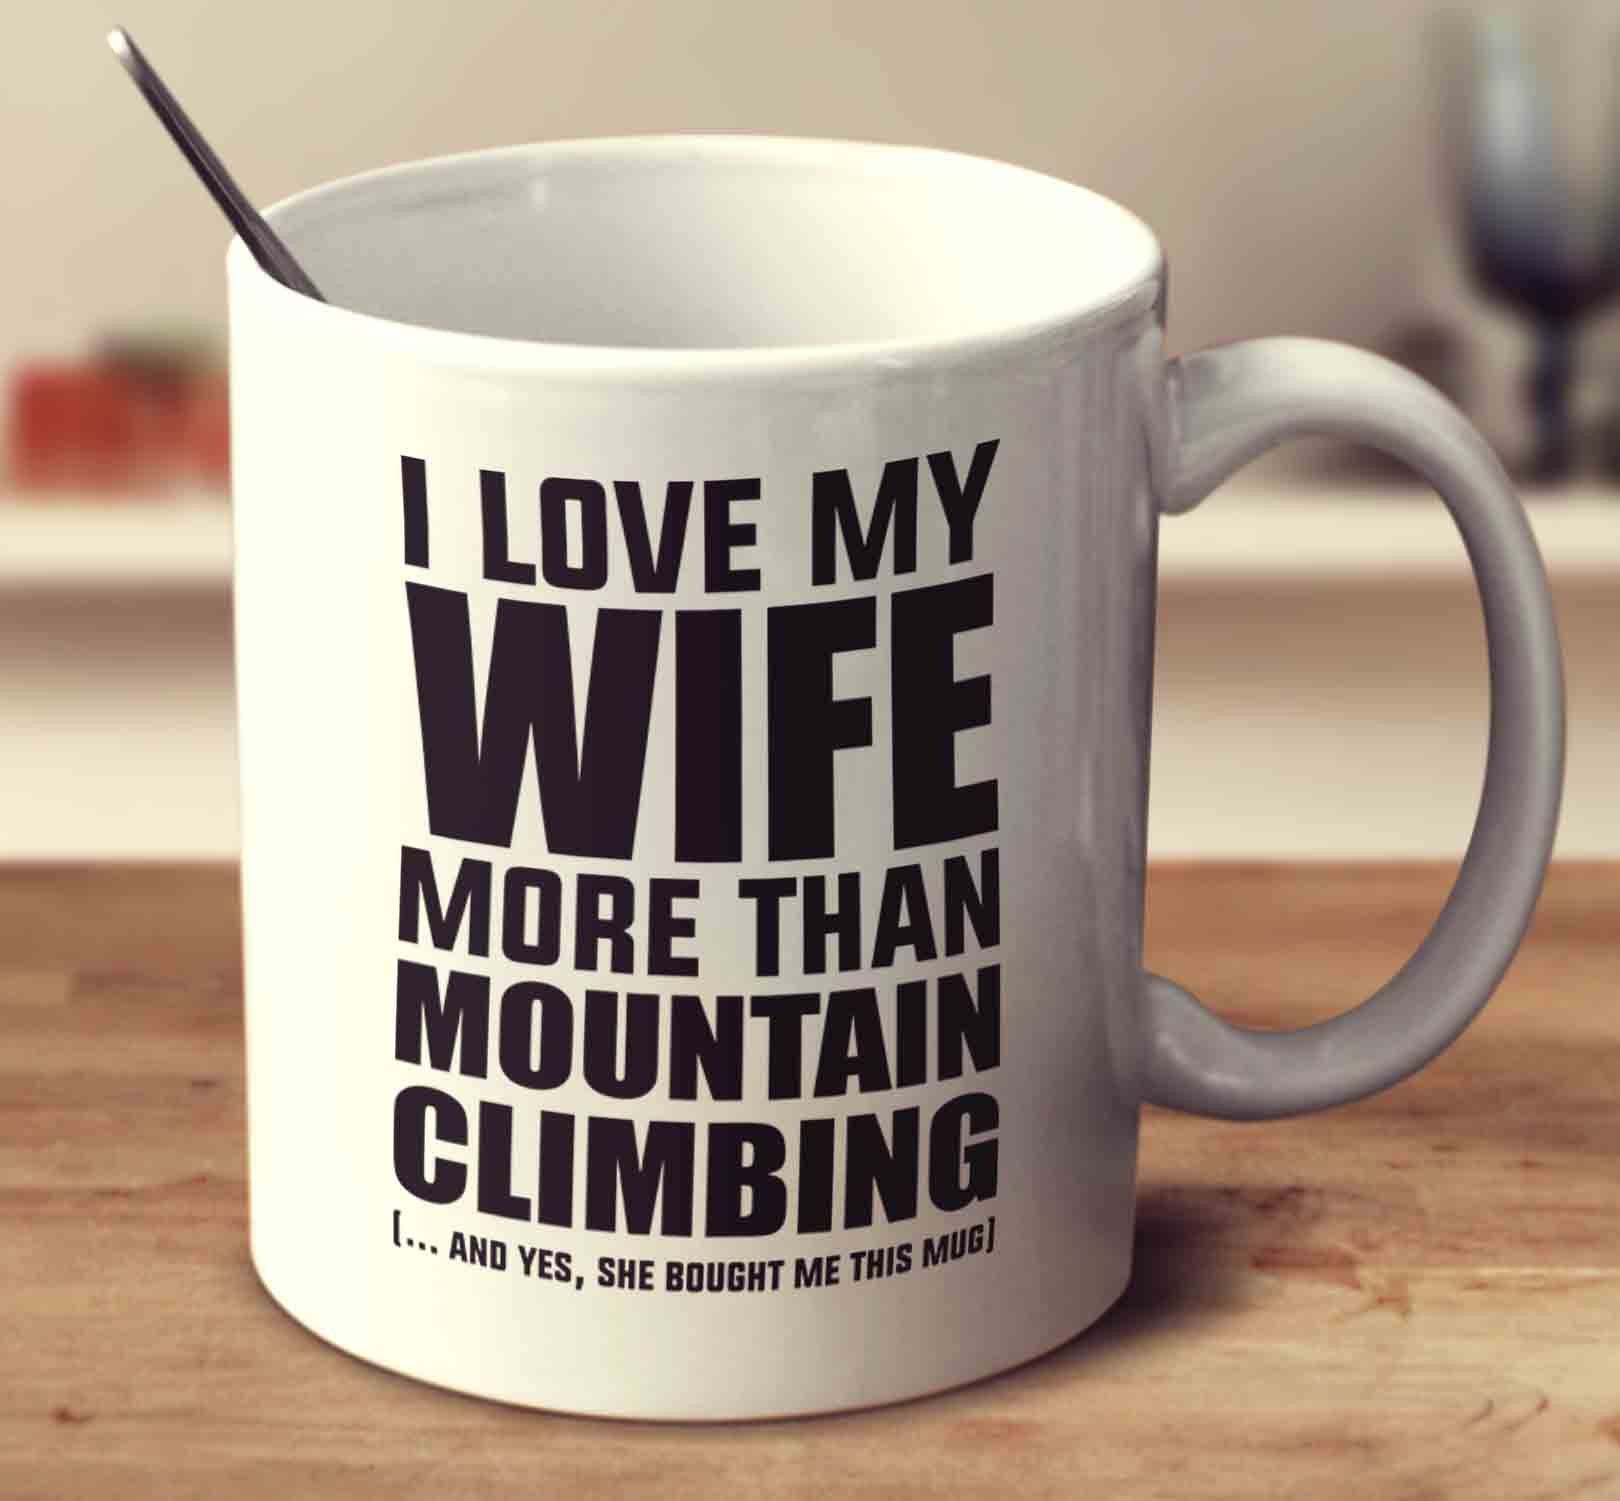 I LOVE climbing' Mug